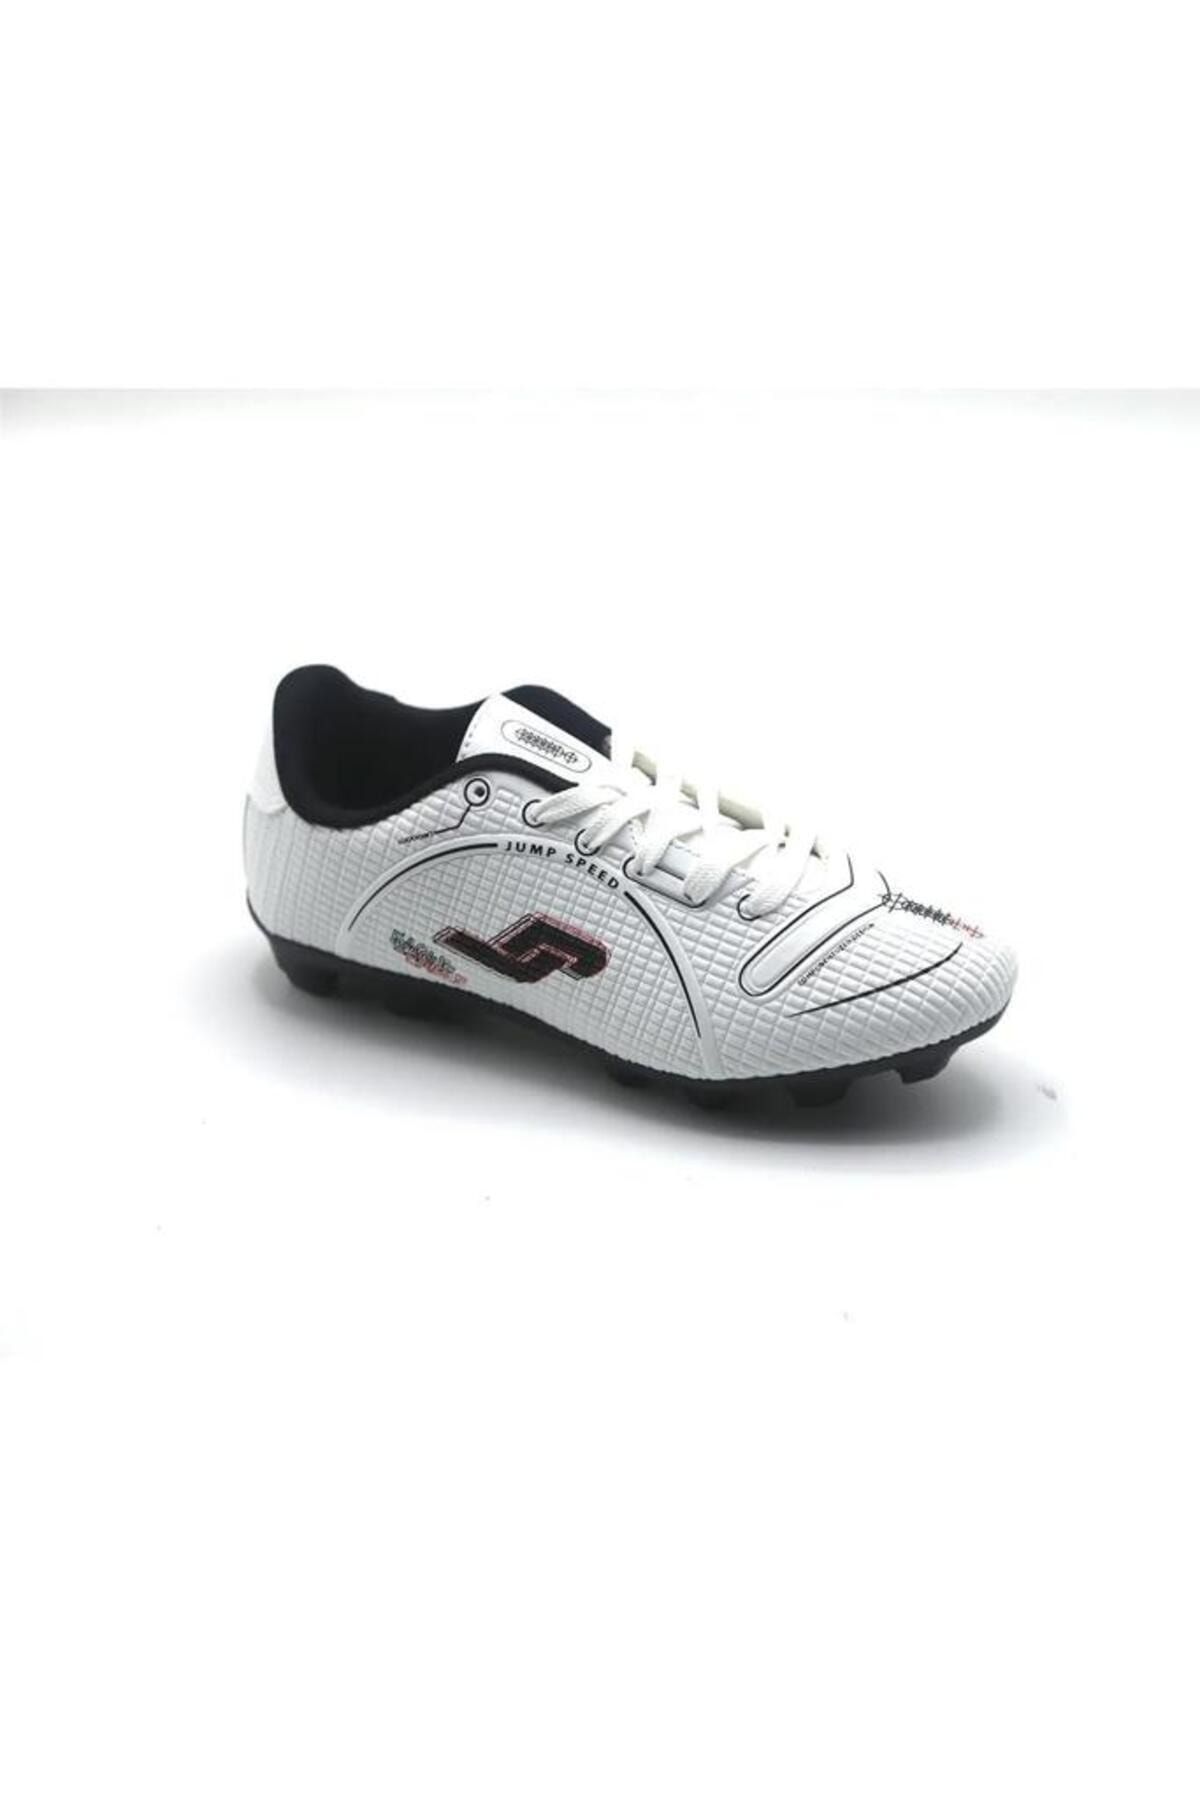 Jump 28223 Beyaz - Kırmızı - Lacivert Erkek Çim - Halı Saha Krampon Futbol Ayakkabısı